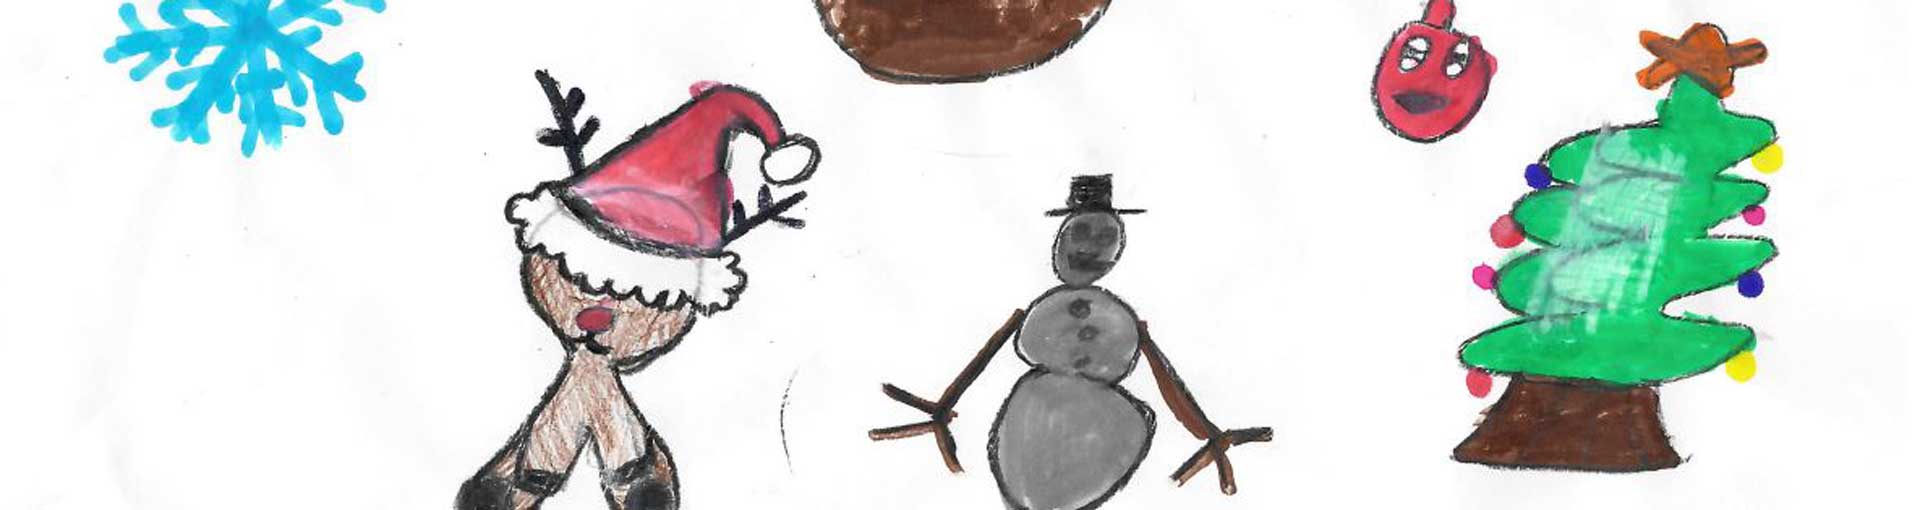 Un dessin d'enfant avec un sapin, un bonhomme de neige et un renne bizarre